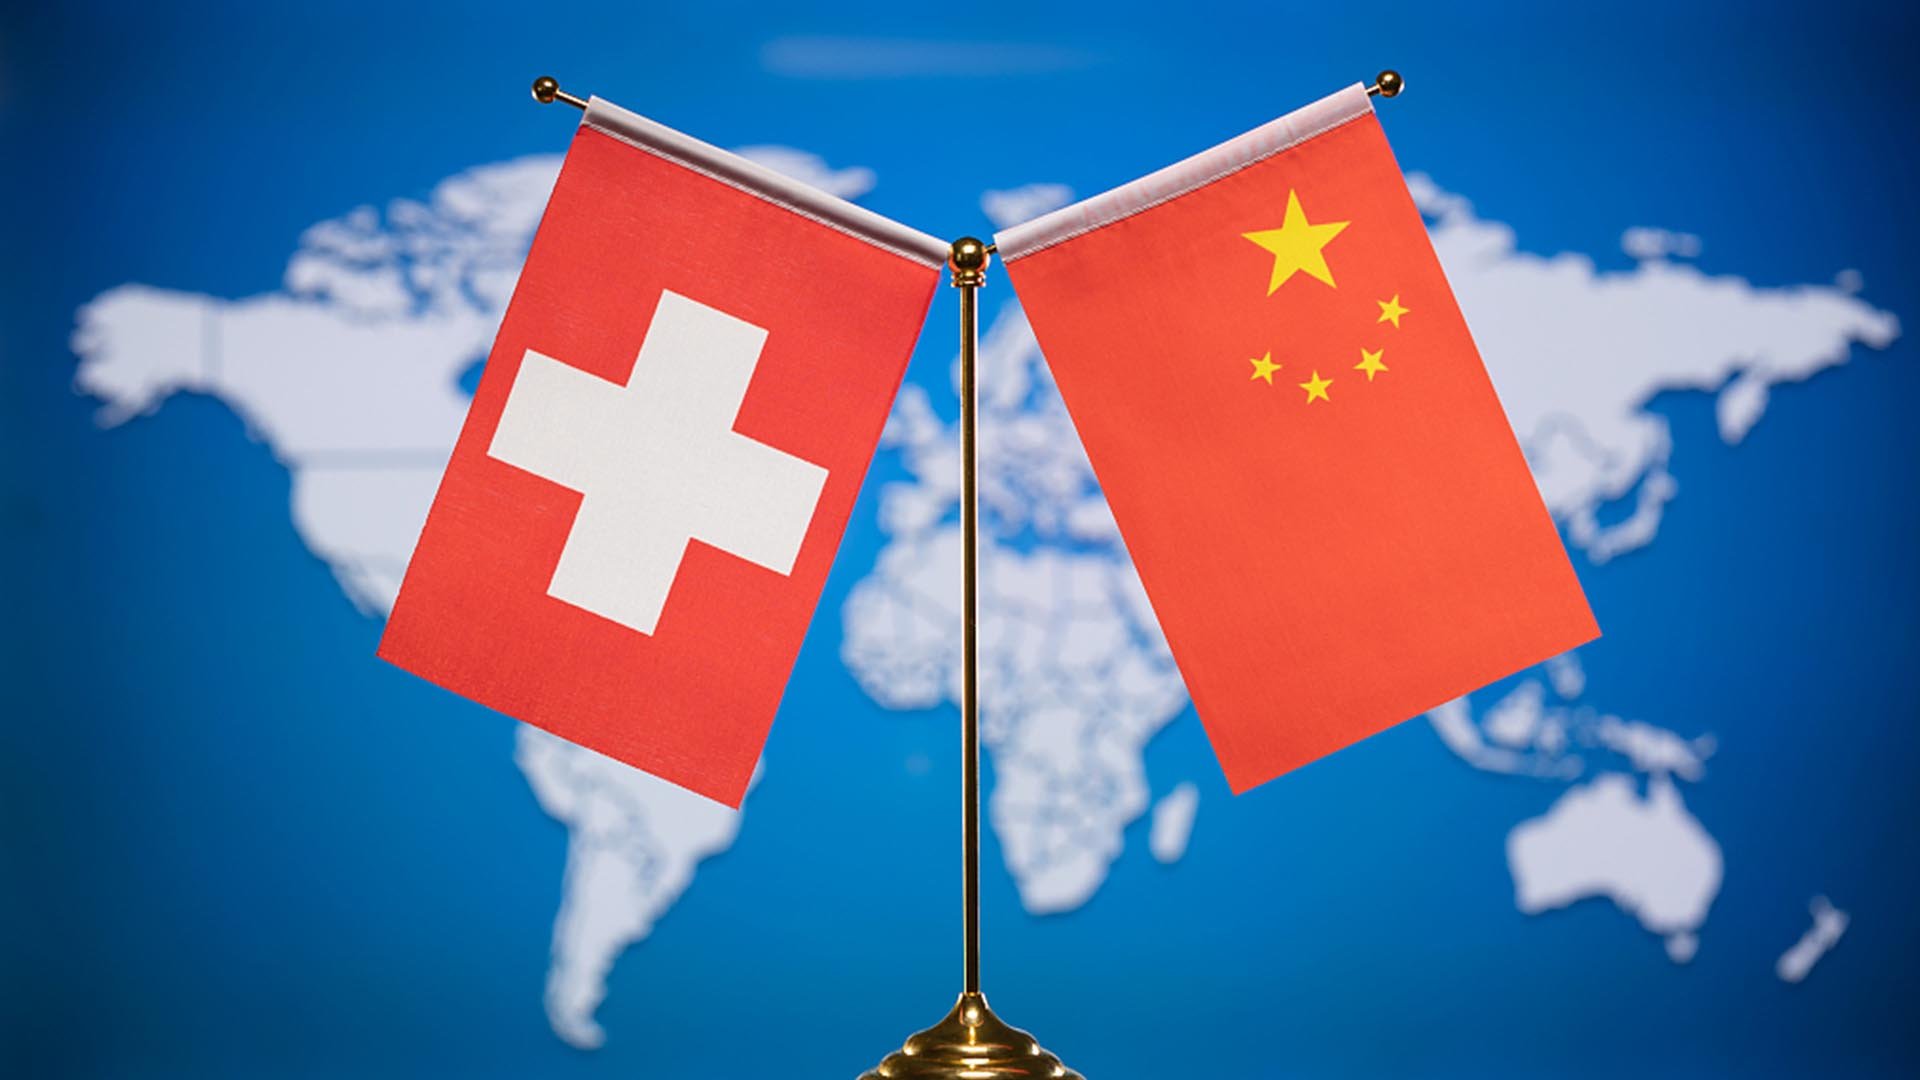 चीन र स्विट्जरल्याण्ड एफटीए स्तरवृद्धि गर्न सहमत